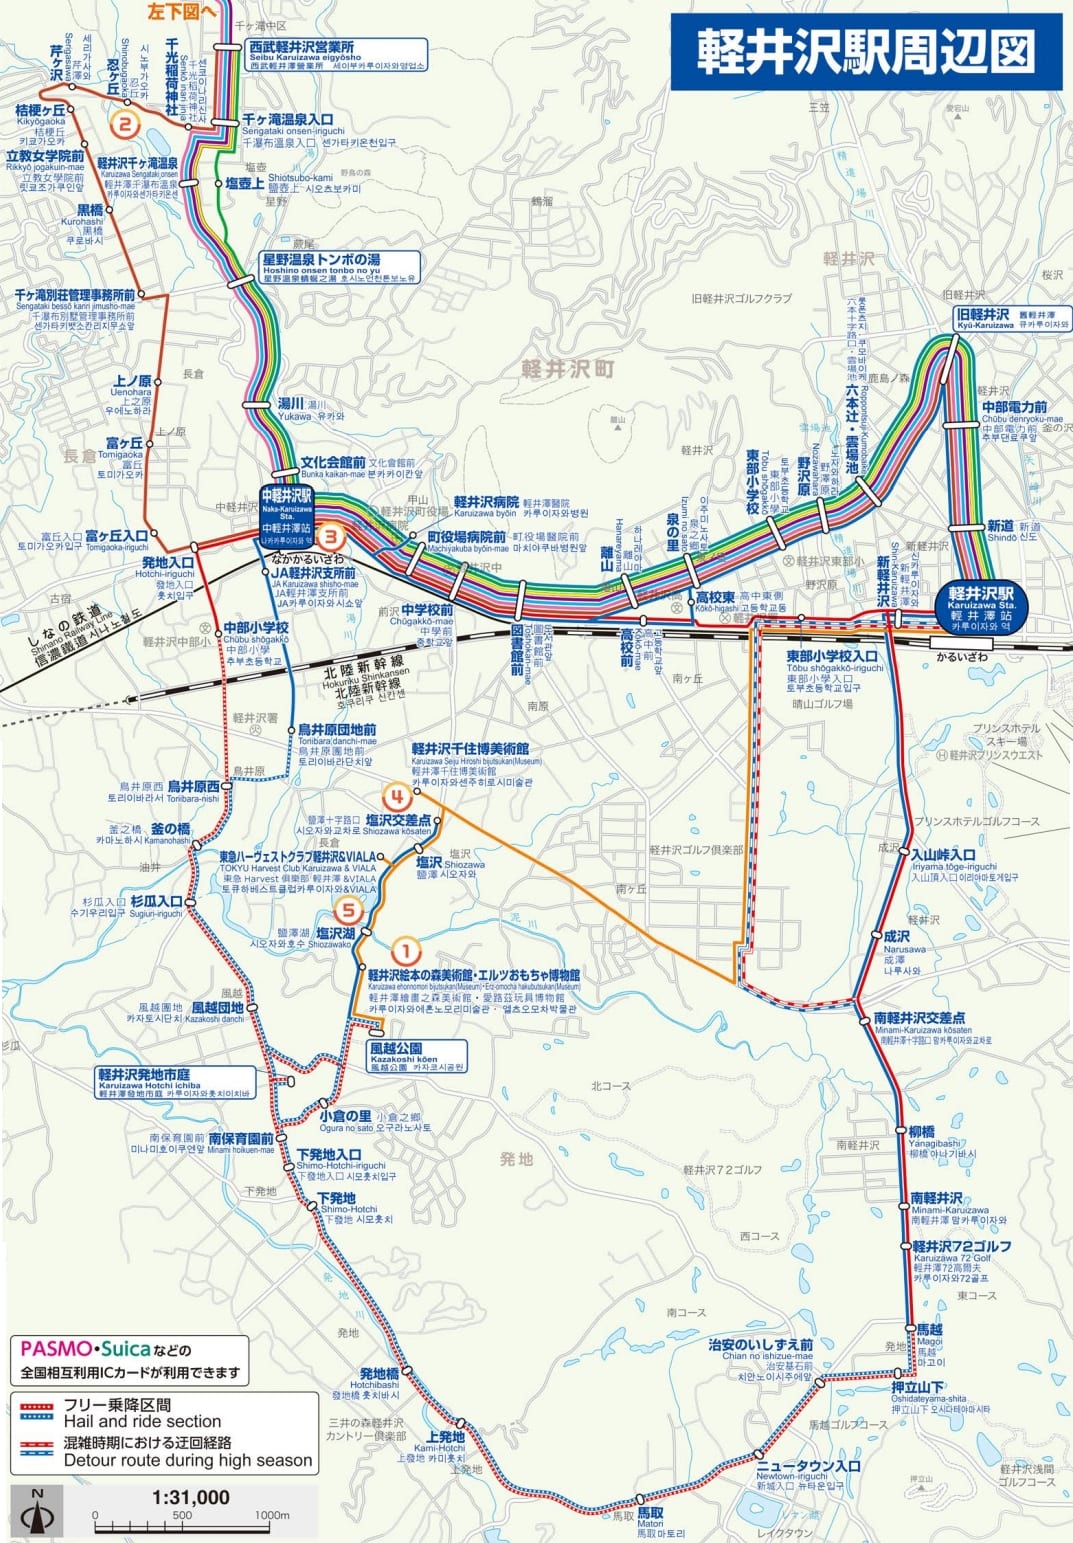 玩輕井澤四種交通方式|租腳踏車、草津交通巴士、西武觀光巴士、信濃鐵道線